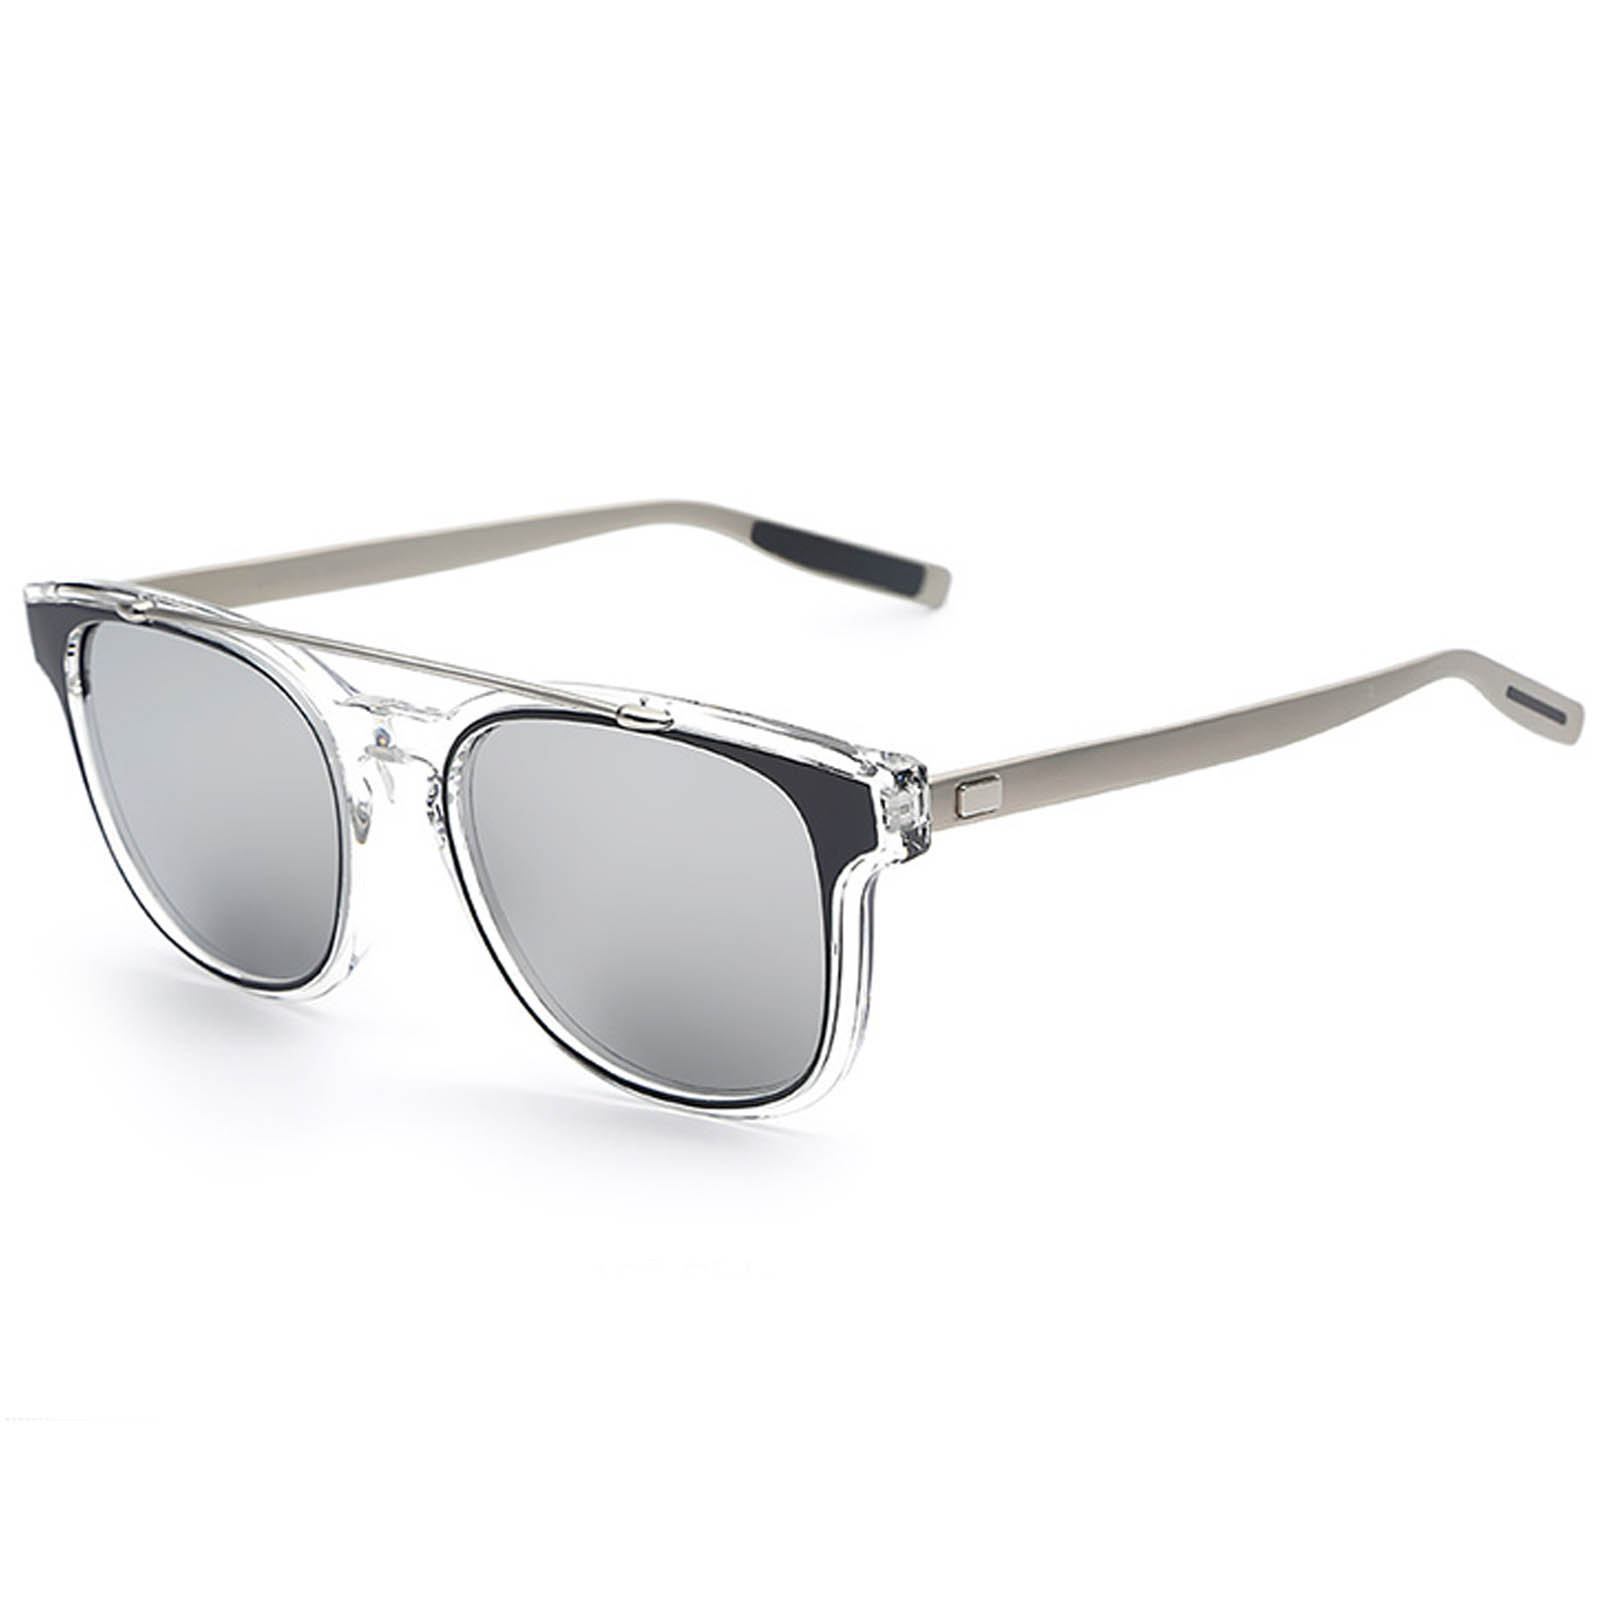 OWL ® Eyewear 019 C5 Retro Sunglasses Silver/Clear Frame Silver Mirror ...